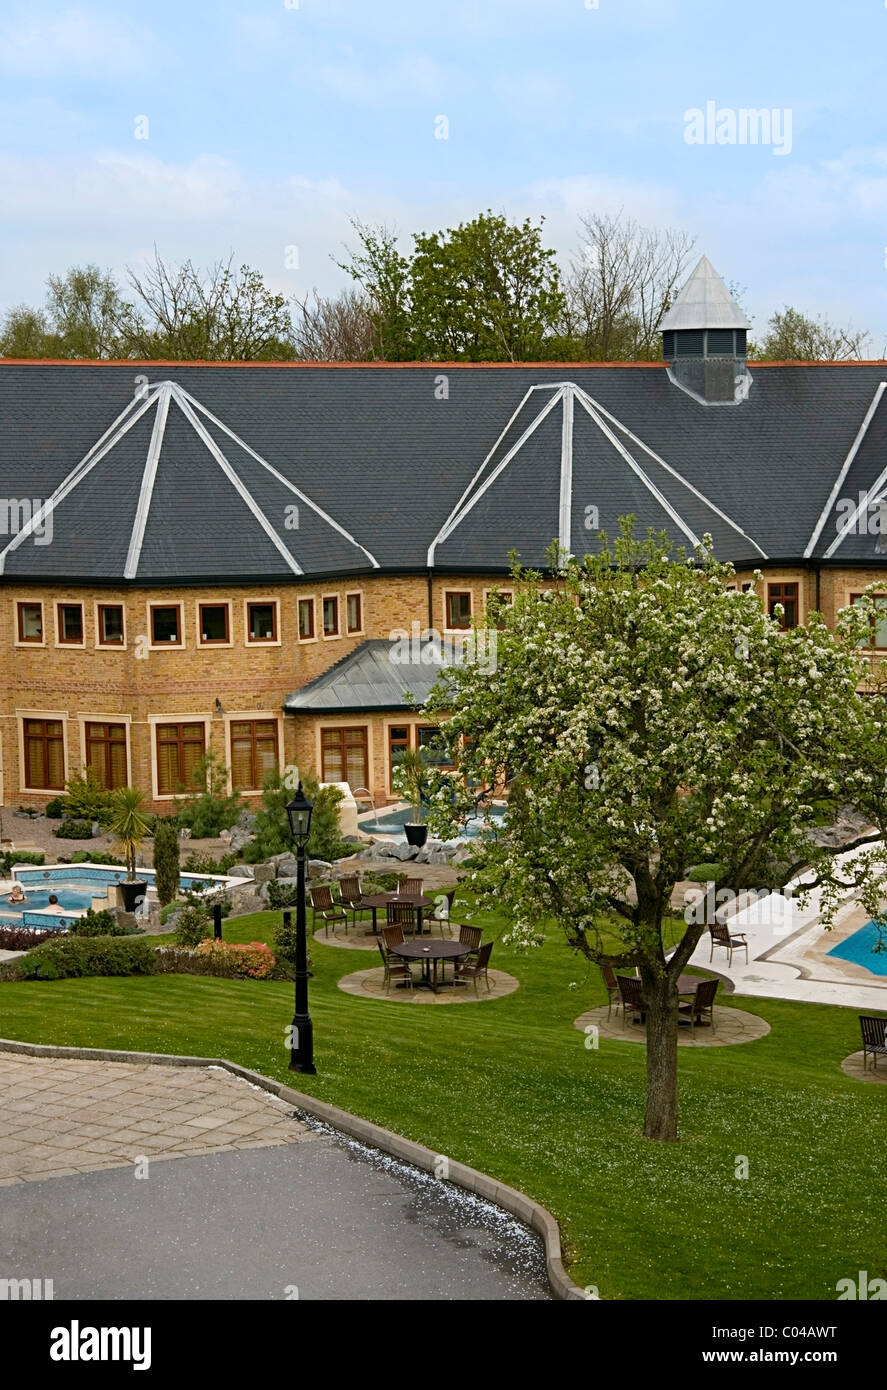 Vue aérienne de Pennyhill Park Hotel & Spa de Luxe, architecture extérieure, sport et santé Bagshot, Surrey, Angleterre, Royaume-Uni, Europe, UNION EUROPÉENNE Banque D'Images